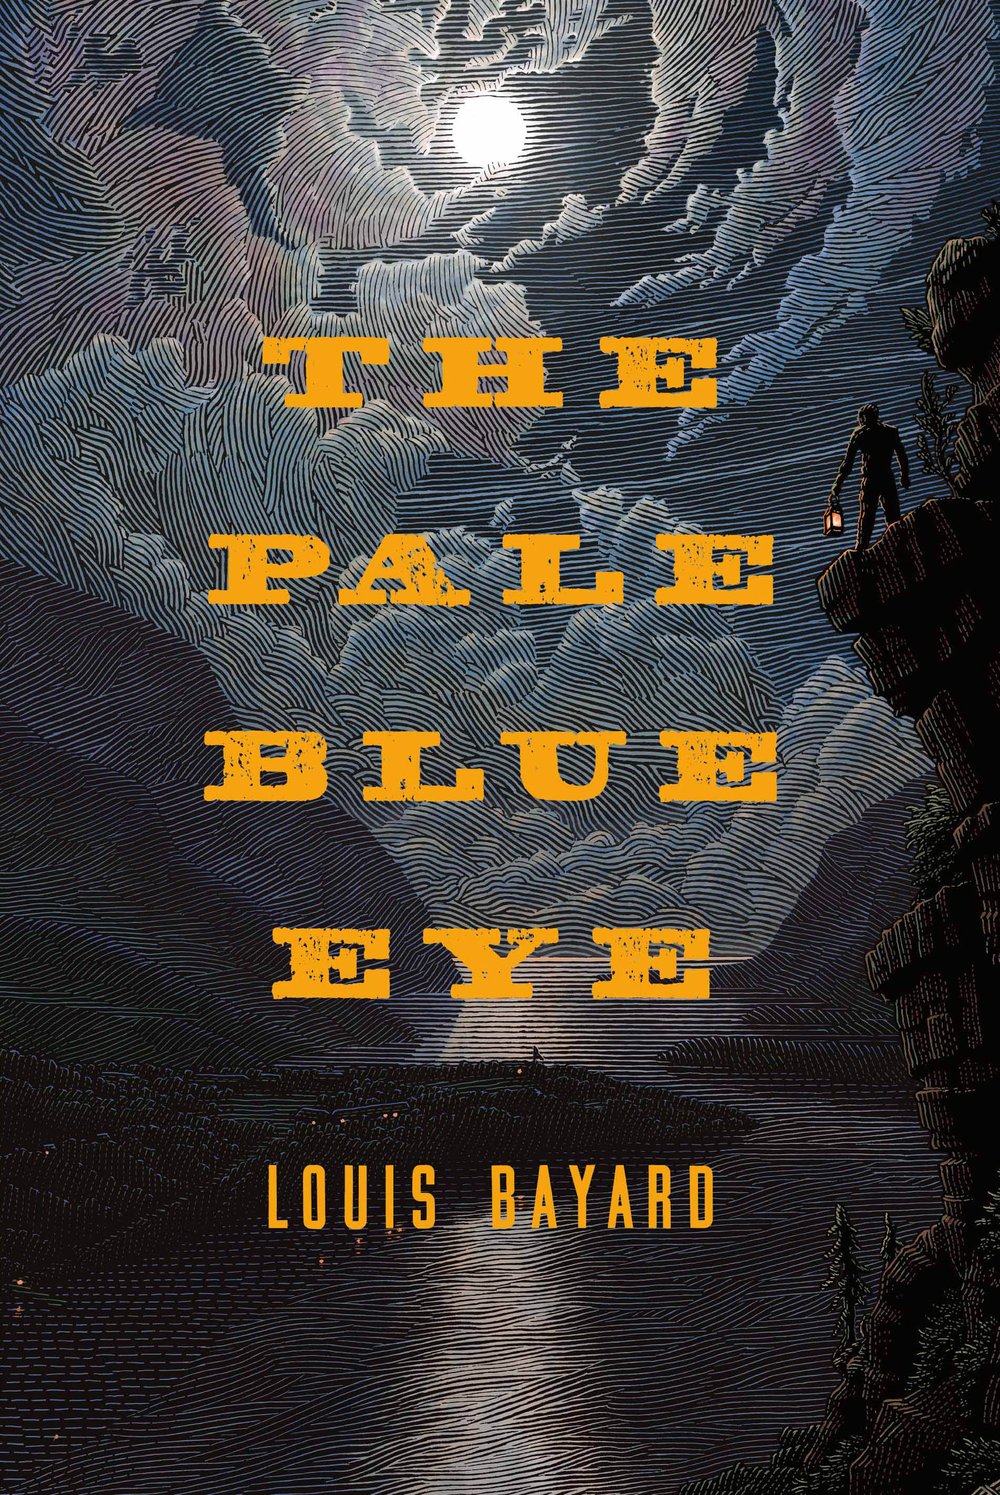 The Pale Blue Eye a Novel — MidWorld Press